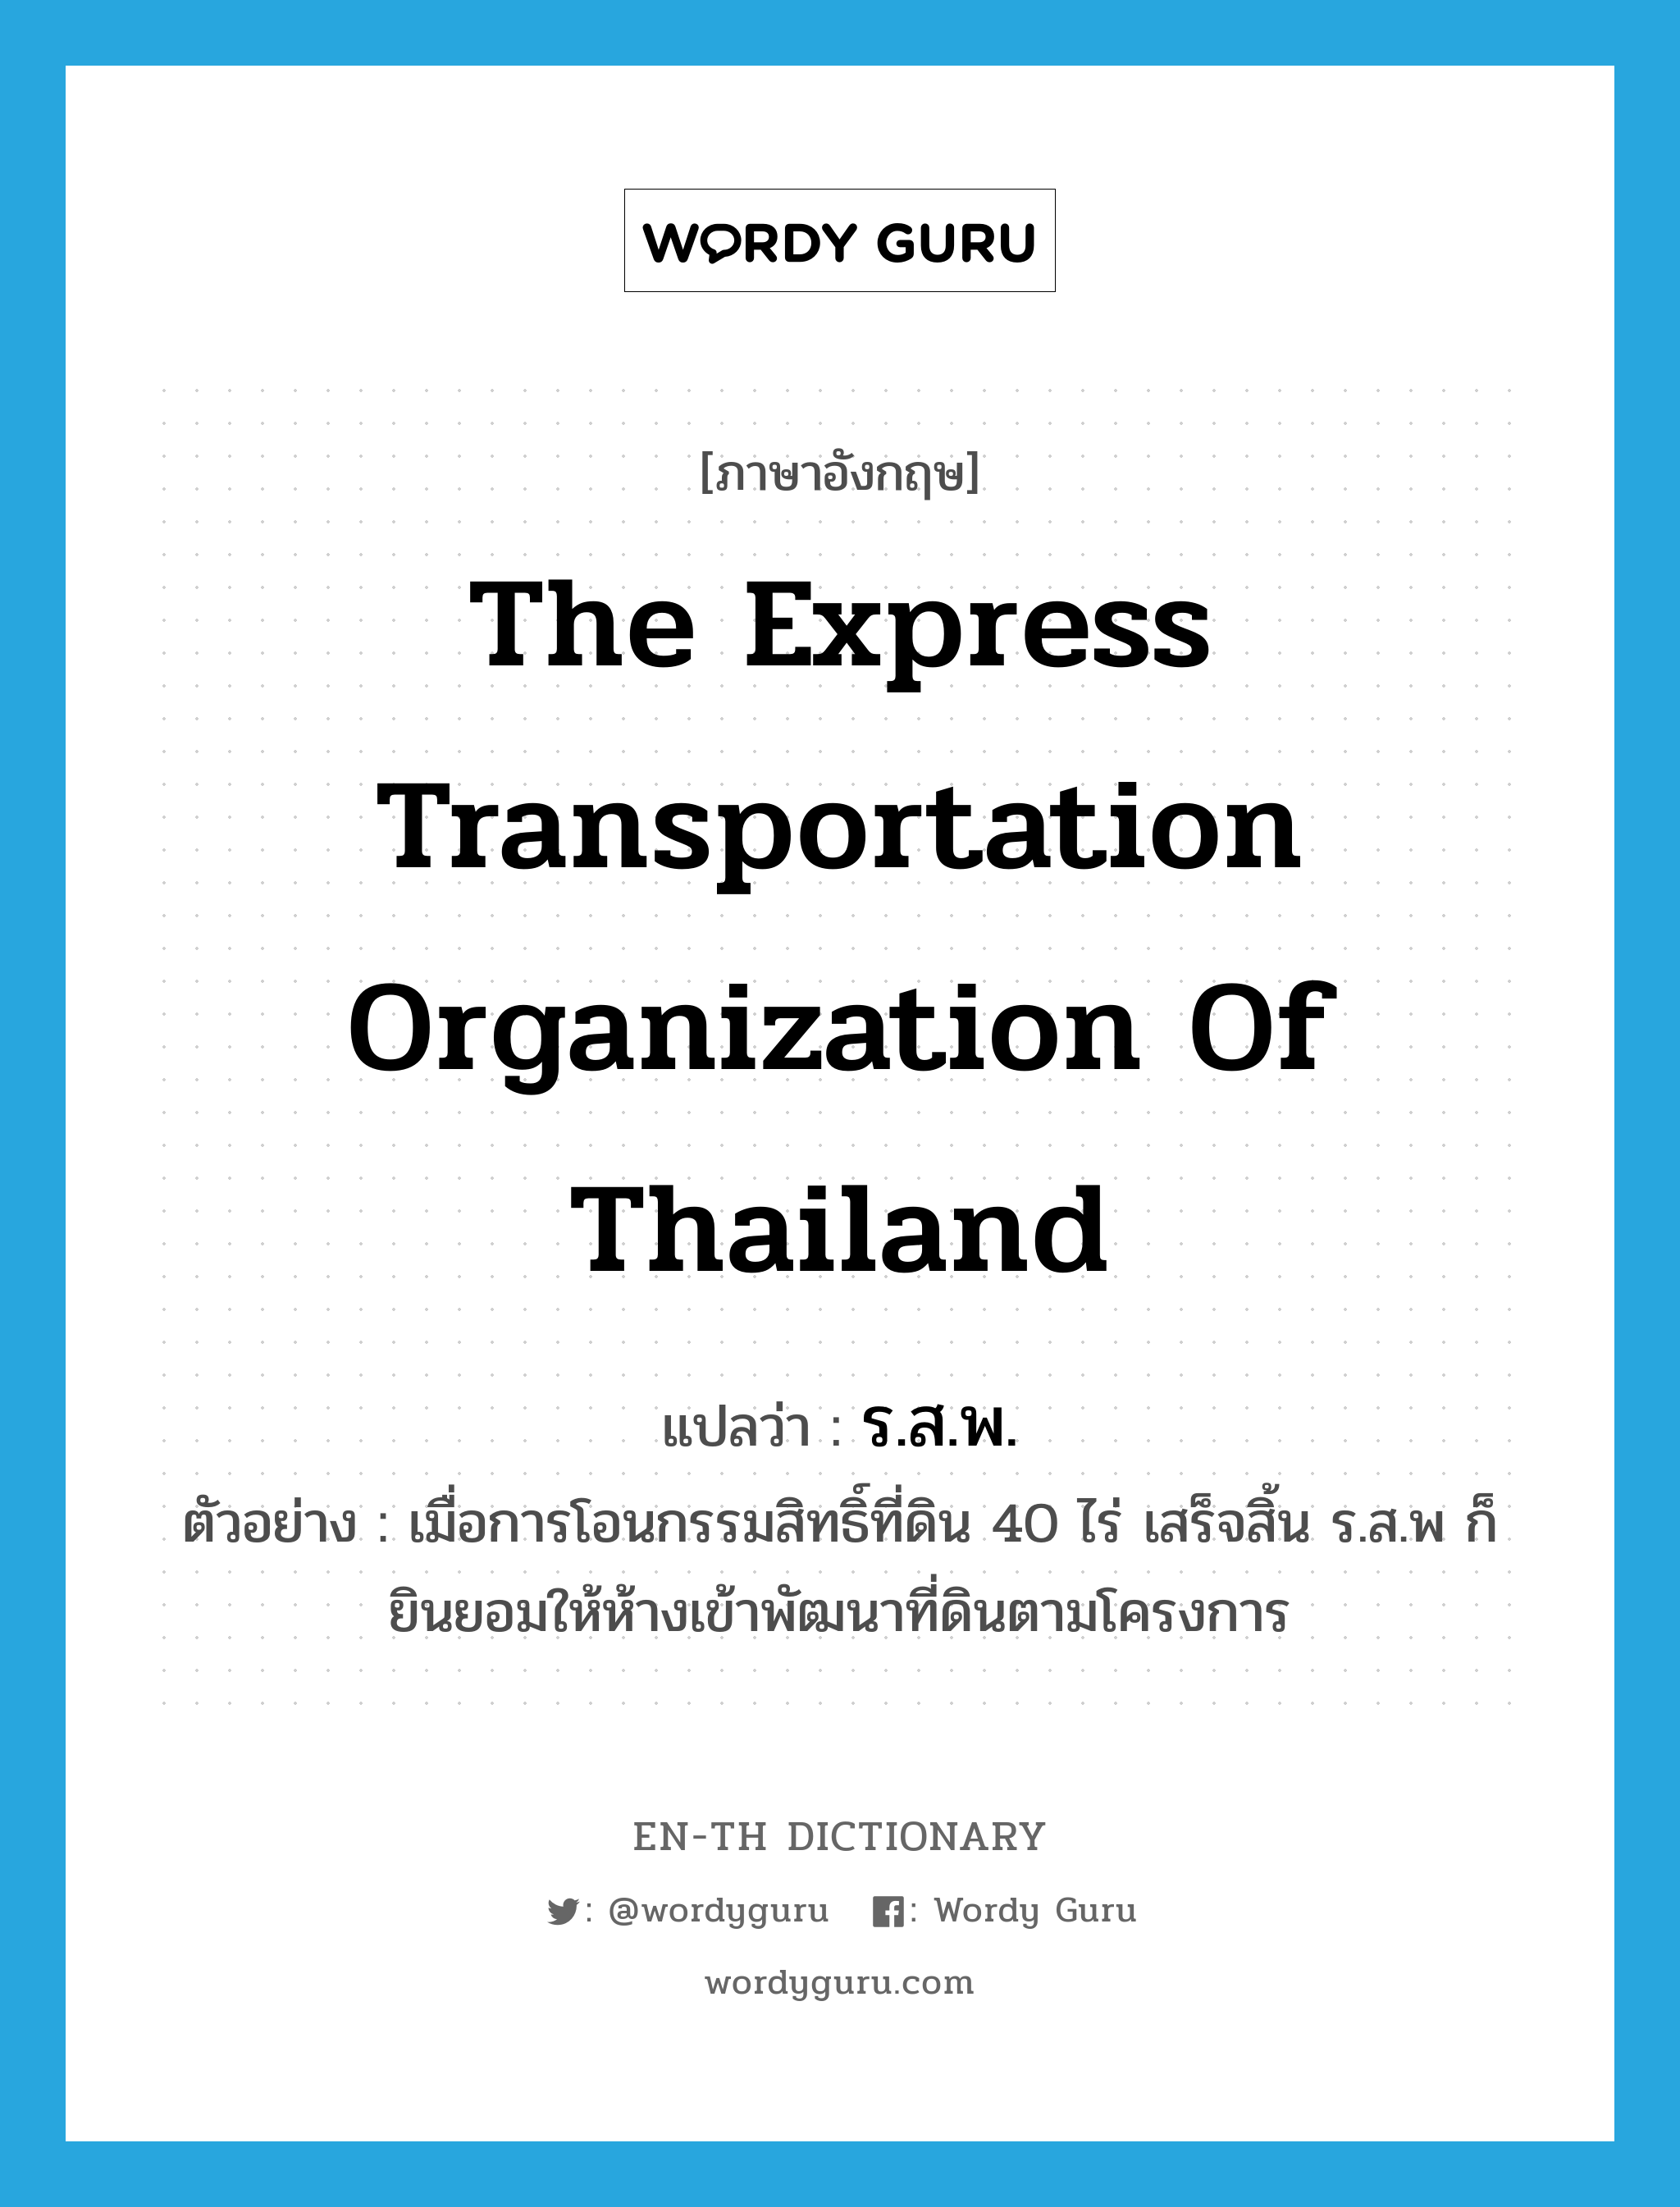 ร.ส.พ. ภาษาอังกฤษ?, คำศัพท์ภาษาอังกฤษ ร.ส.พ. แปลว่า The Express Transportation Organization of Thailand ประเภท N ตัวอย่าง เมื่อการโอนกรรมสิทธิ์ที่ดิน 40 ไร่ เสร็จสิ้น ร.ส.พ ก็ยินยอมให้ห้างเข้าพัฒนาที่ดินตามโครงการ หมวด N